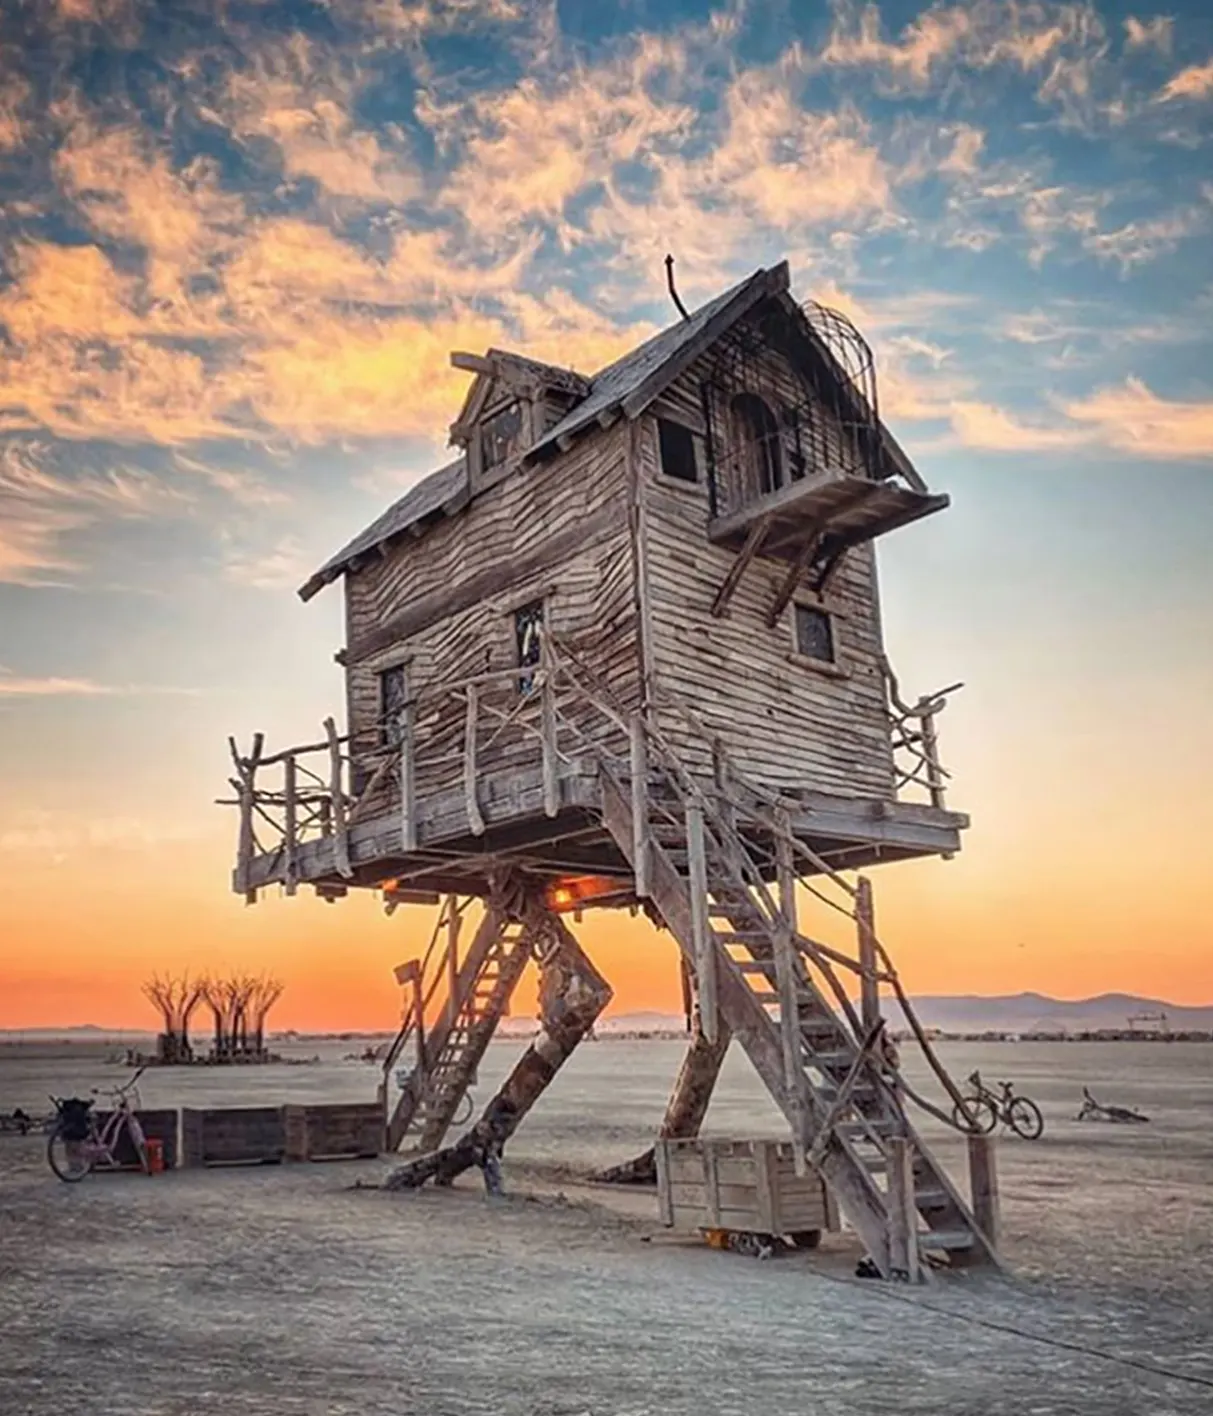 Interesting photo. Жилище на Burning man. Необычные фотографии. Интересные фото. Избушка на курьих ножках.